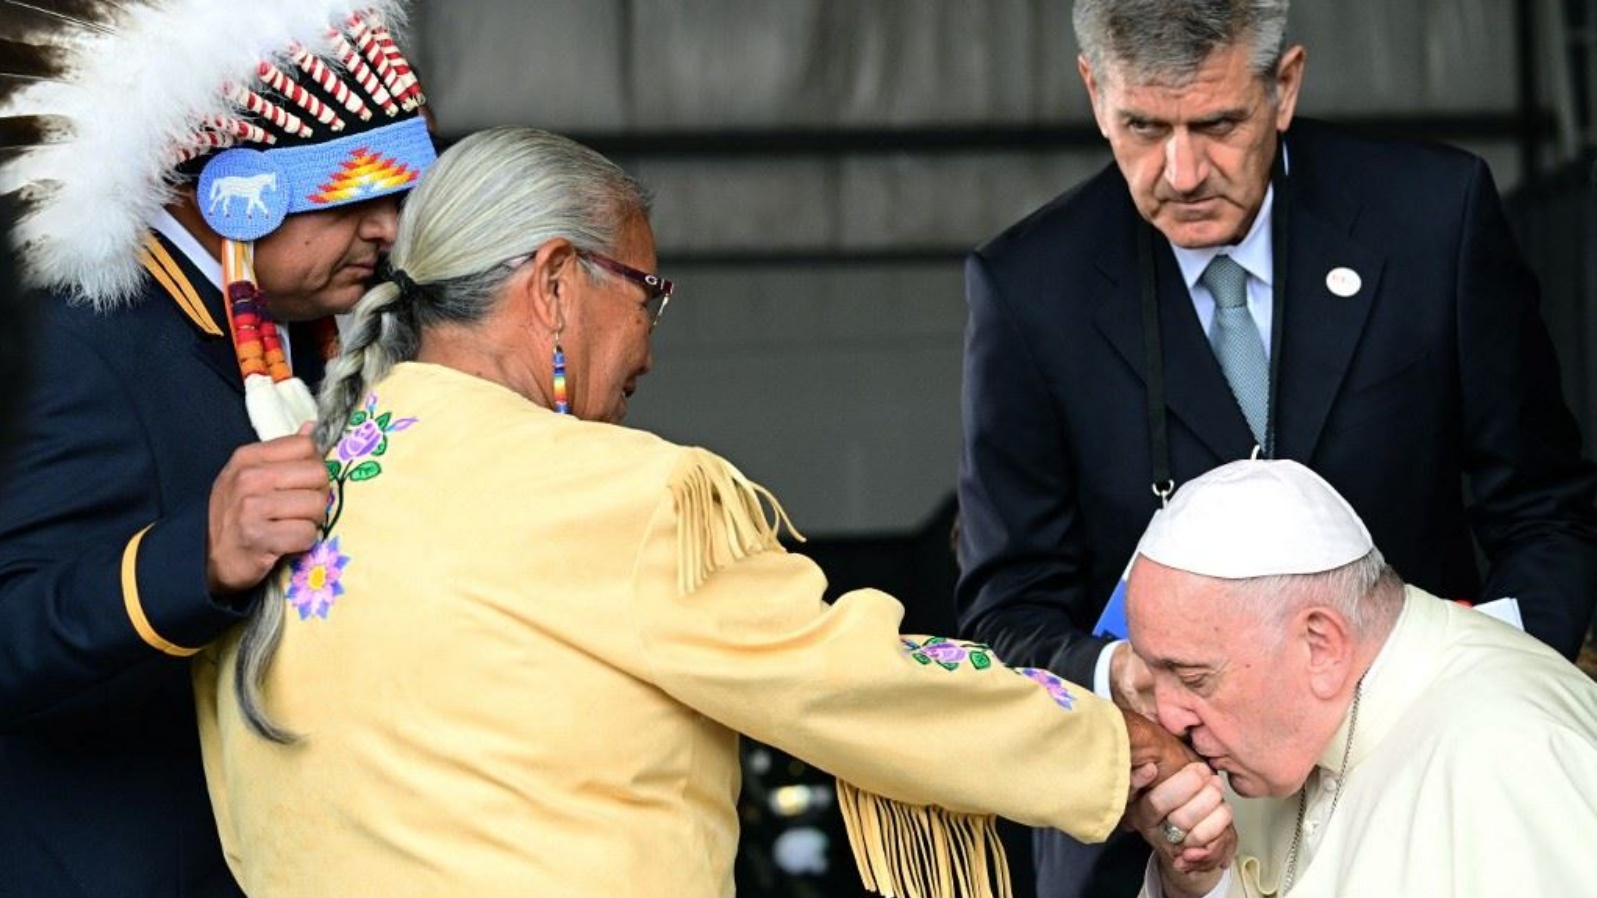 البابا فرنسيس مقبّلاً يد إحدى أفراد السكان الأصليين في كندا